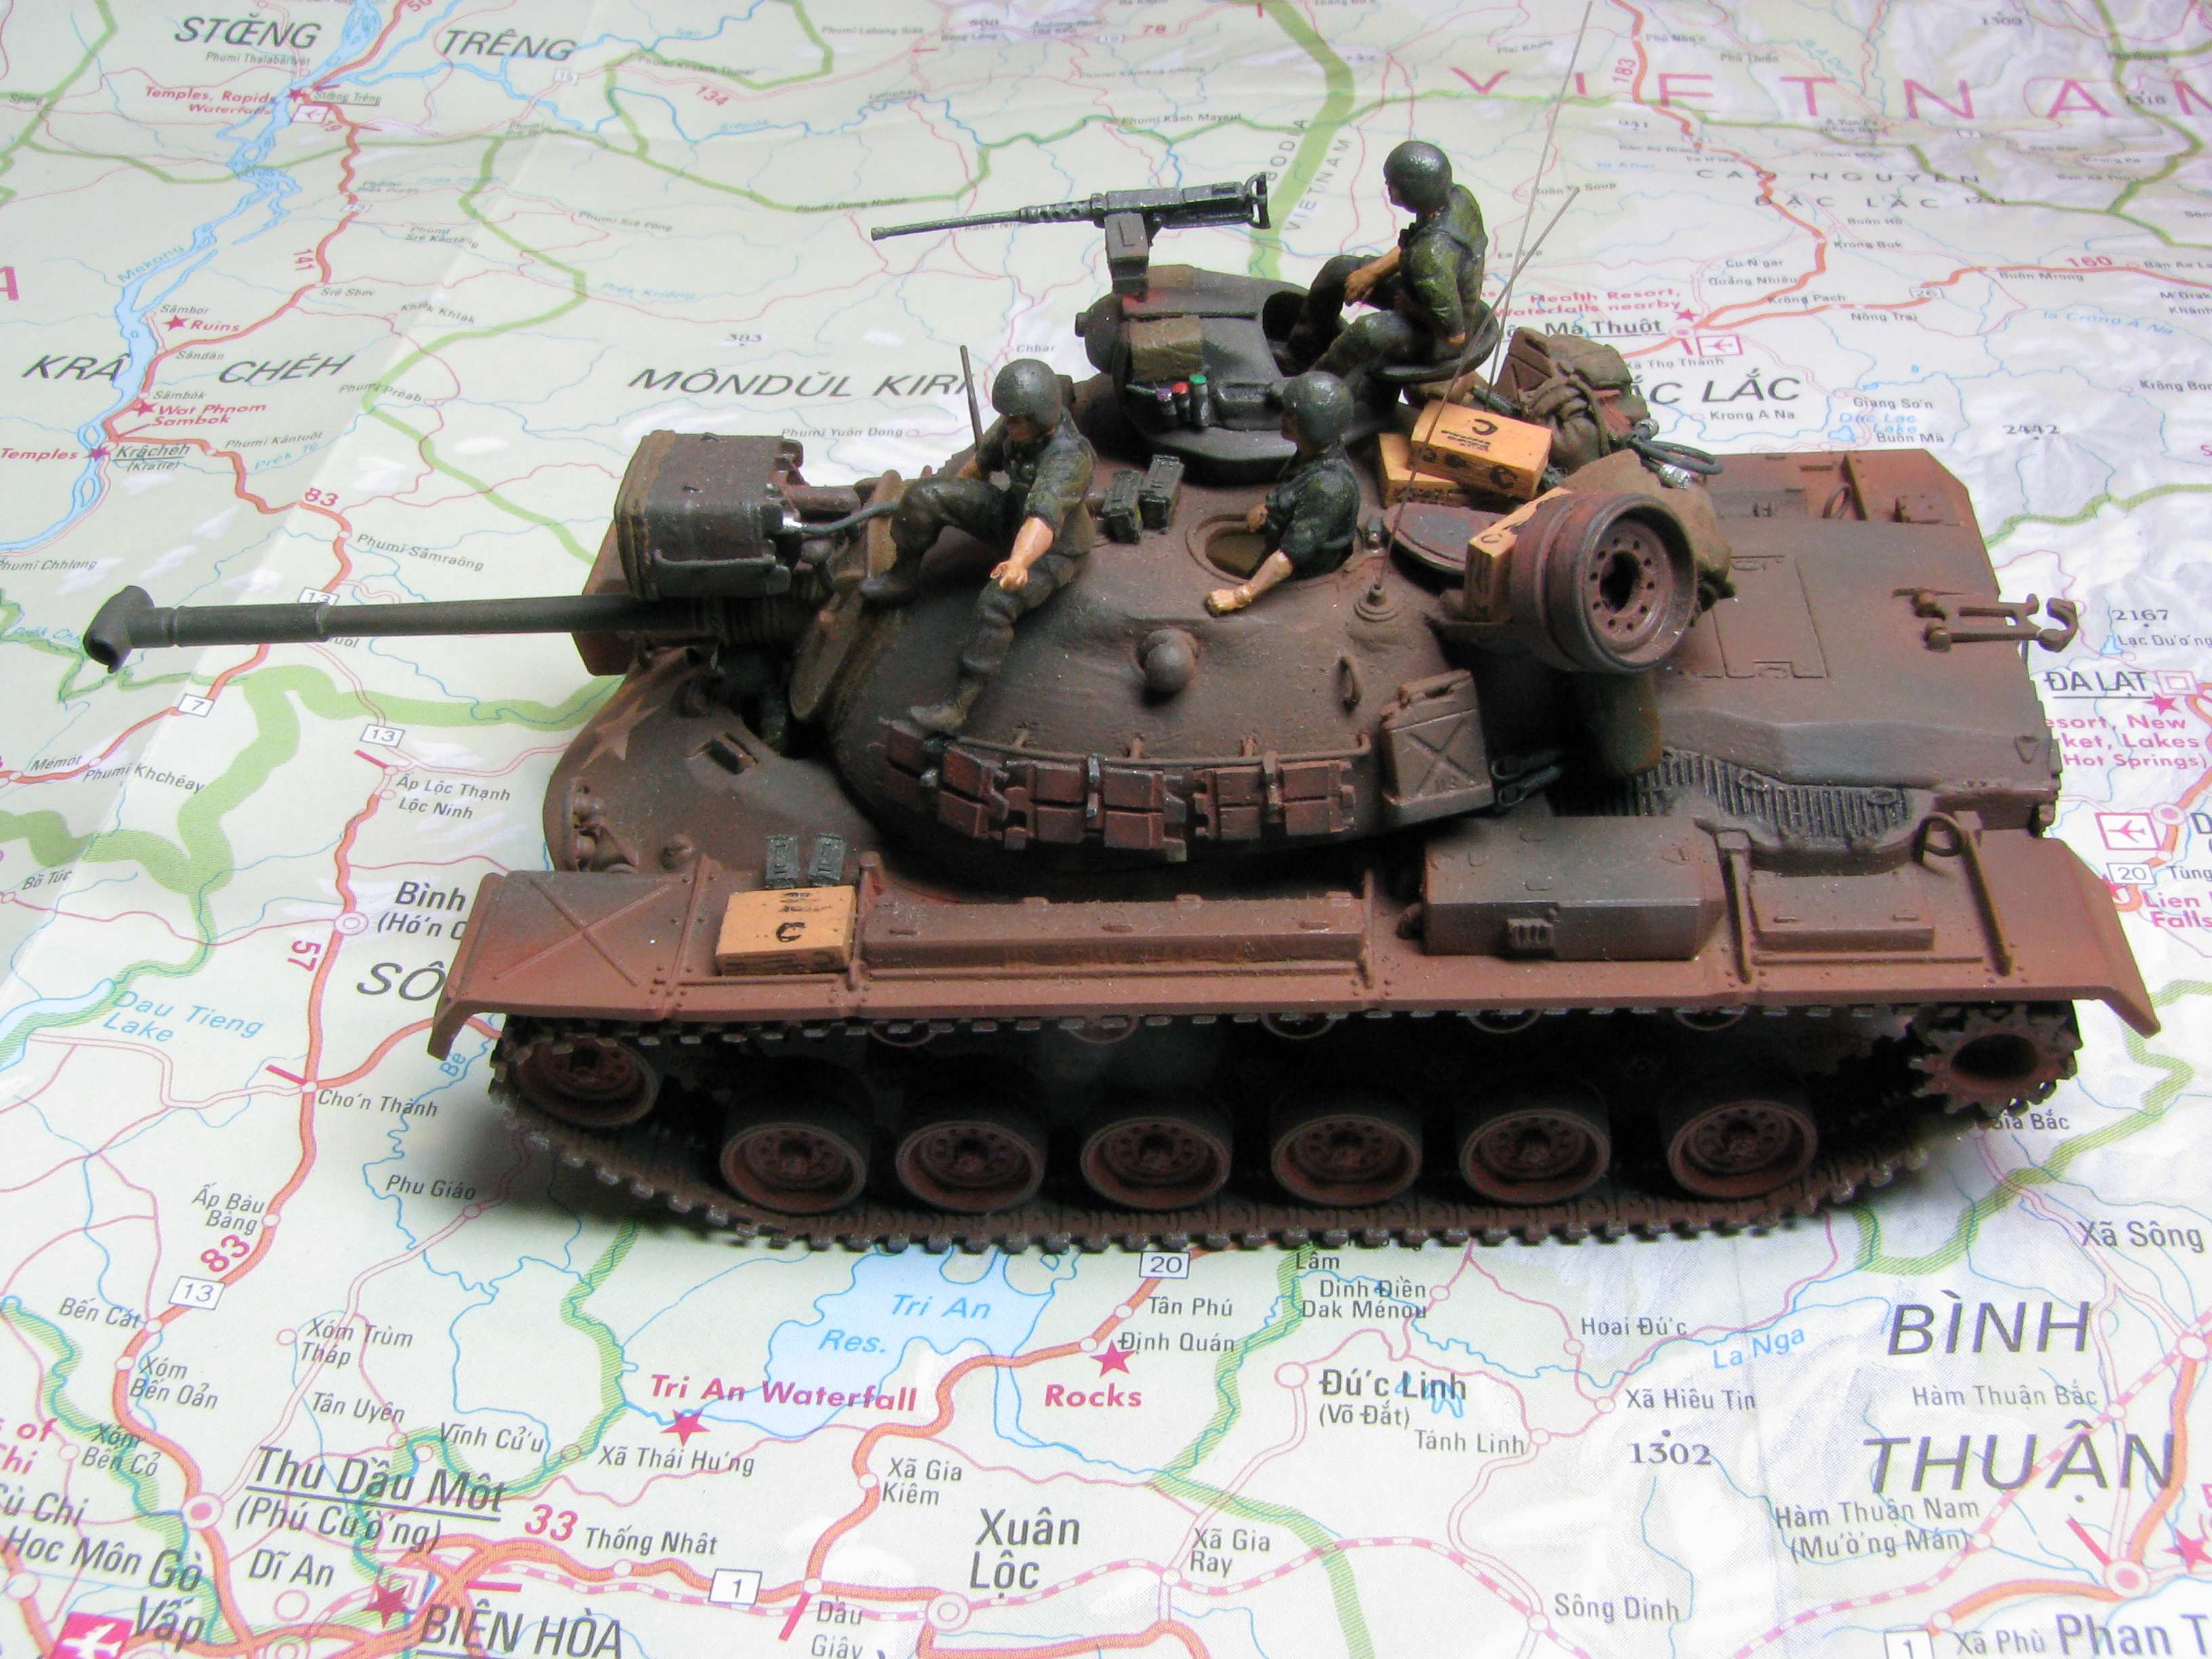 1:72 M48A3 Patton by Pawel